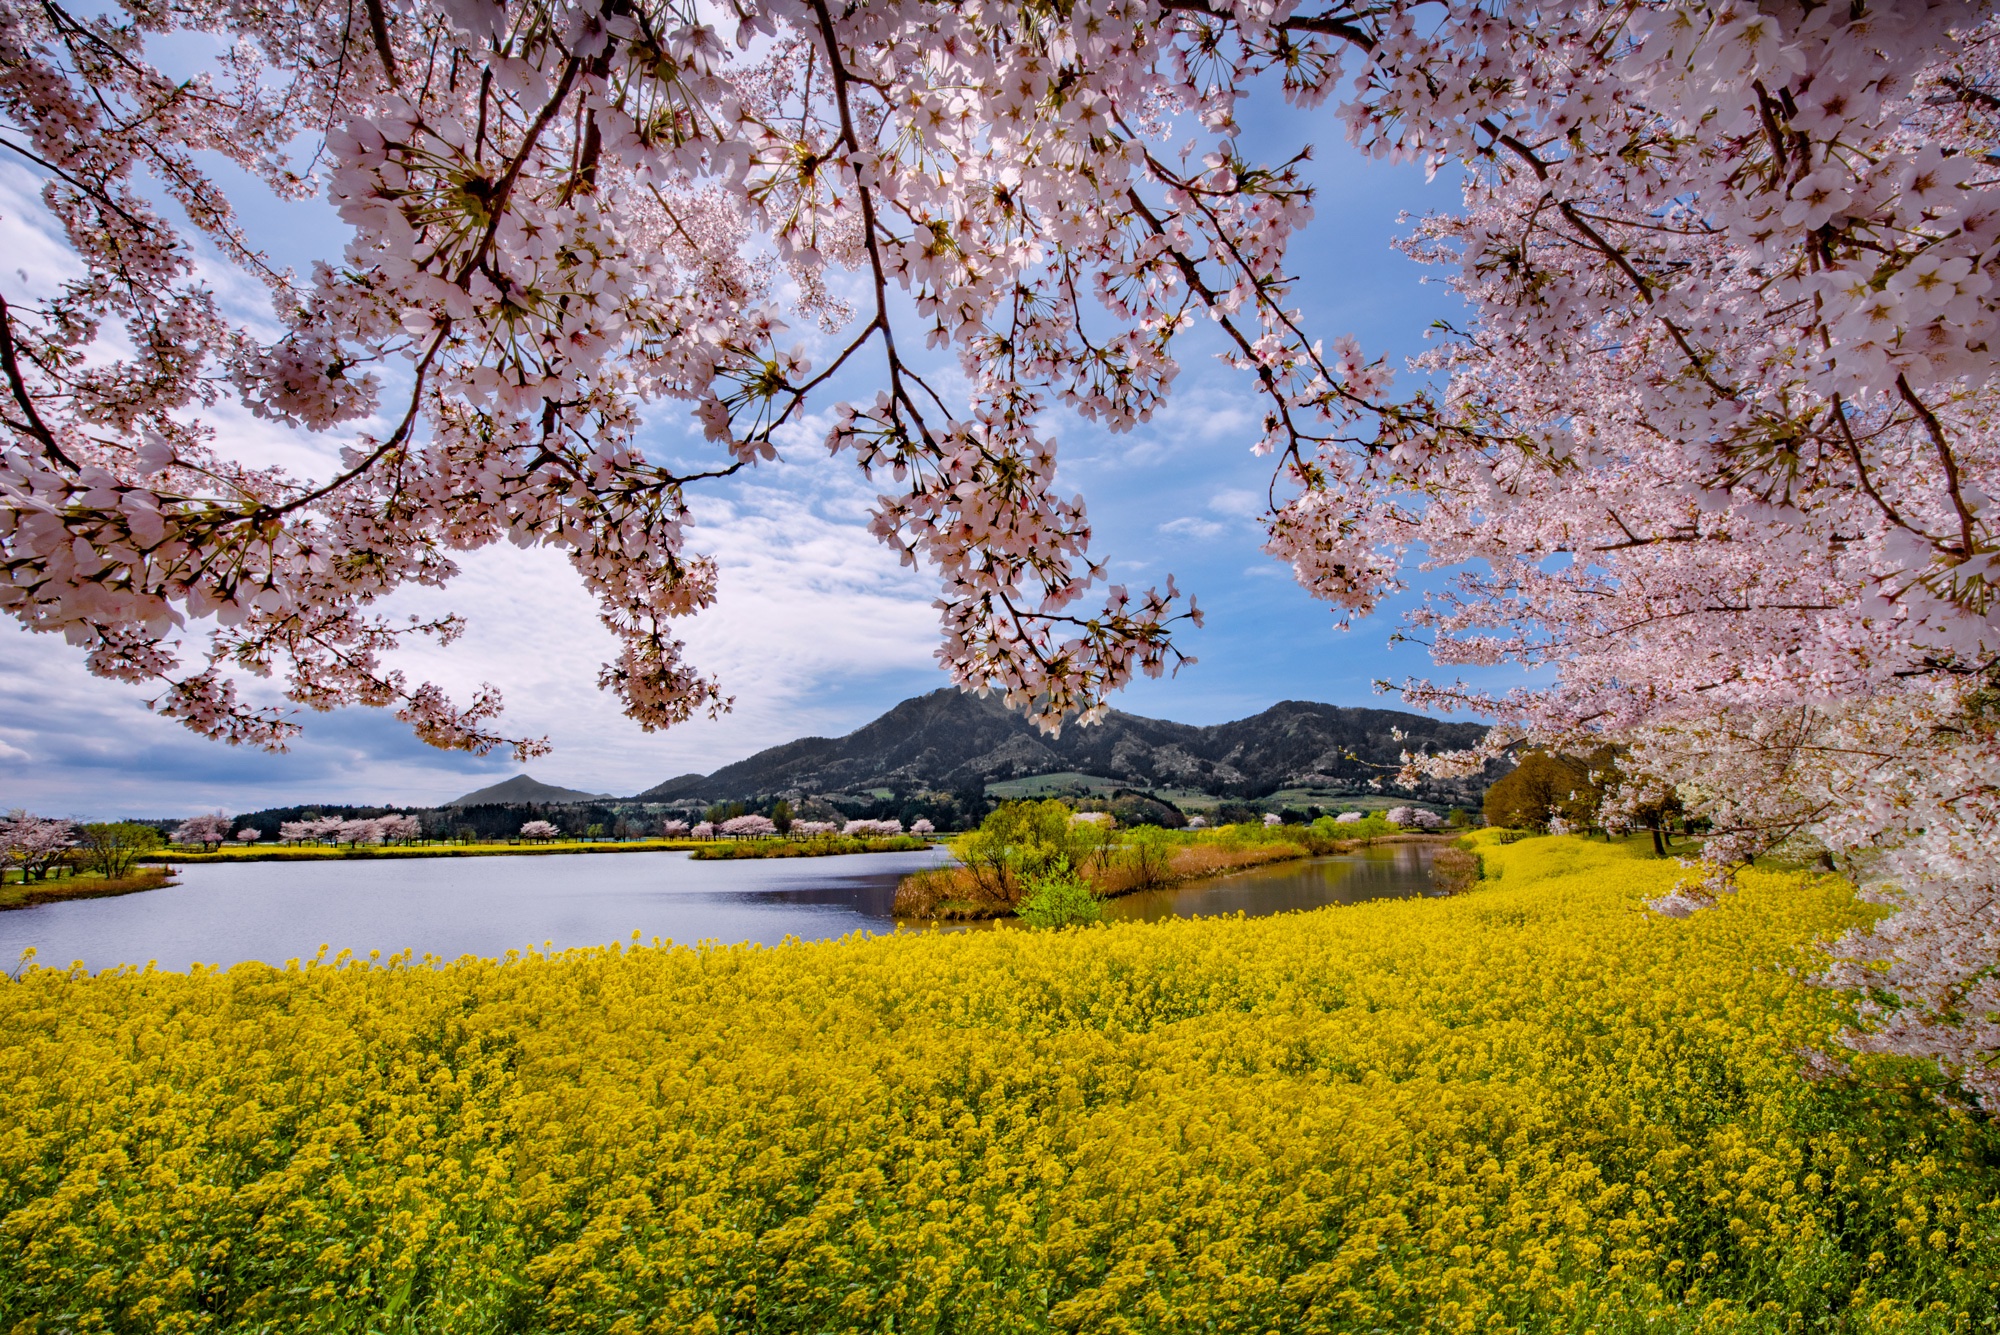 Fukushima Cherry Blossom Tours Blain Harasymiw Photography